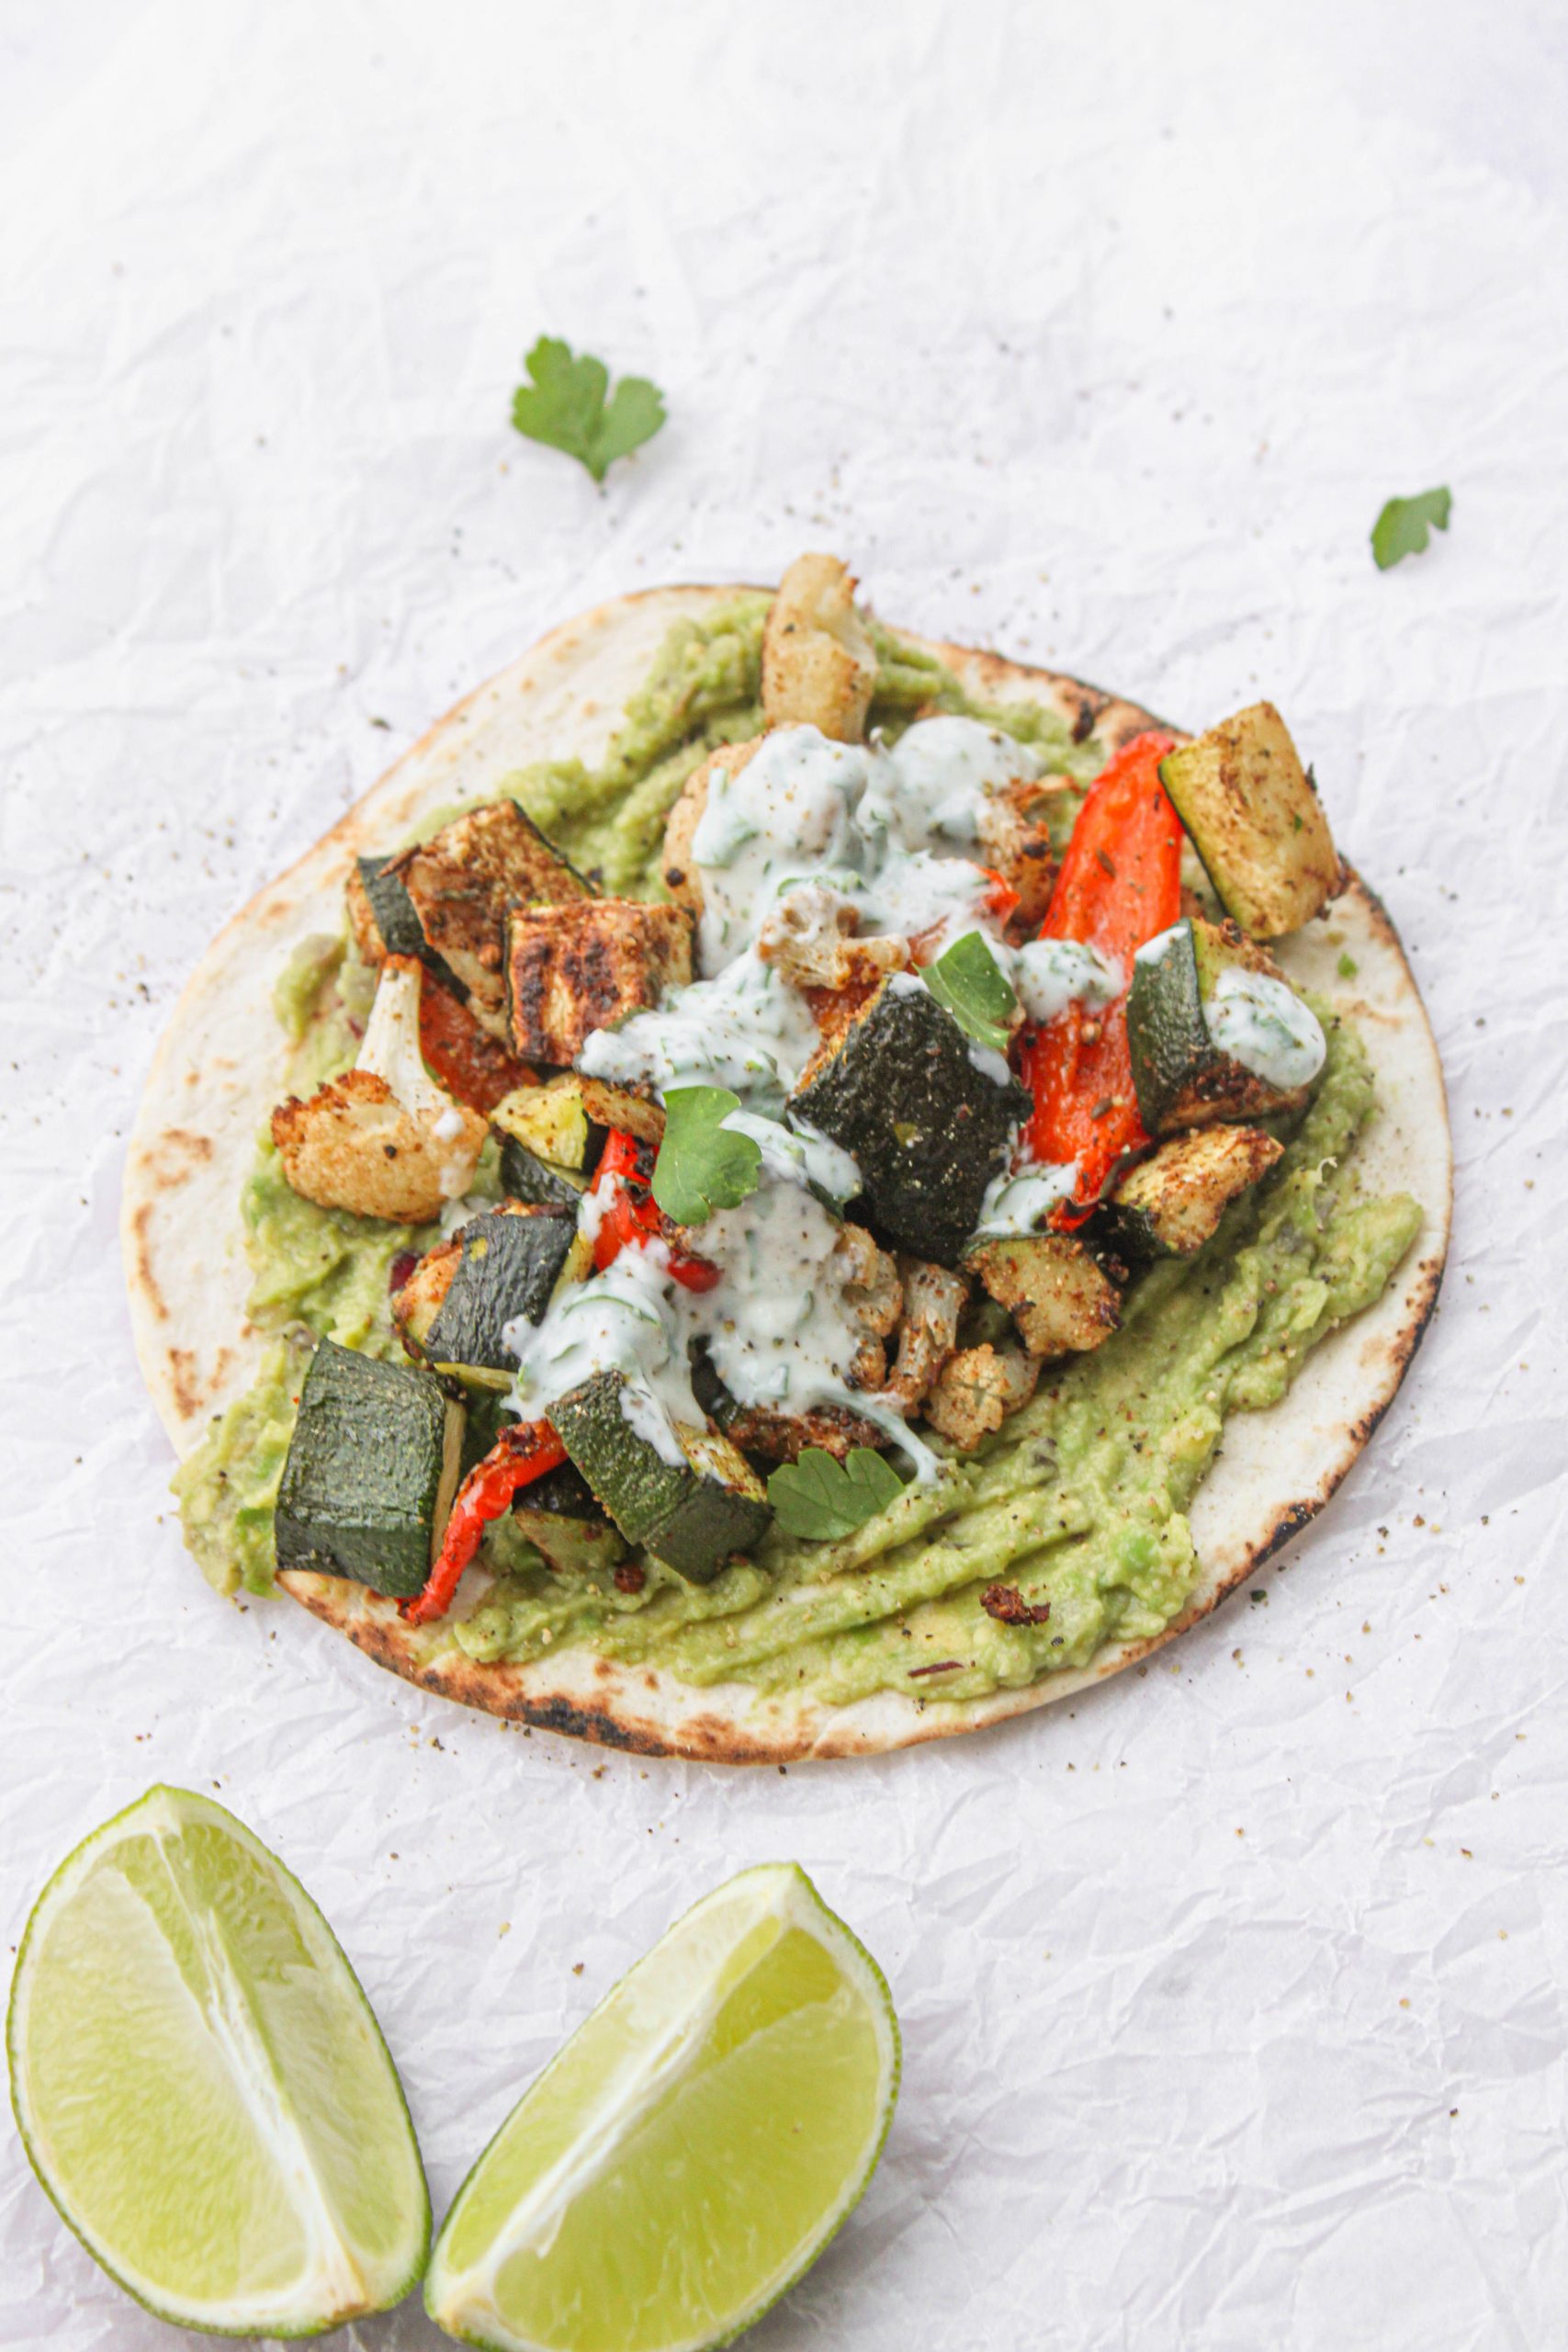 vega taco makkelijk gezond lekker snel goedkoop recept 15 minuten recept